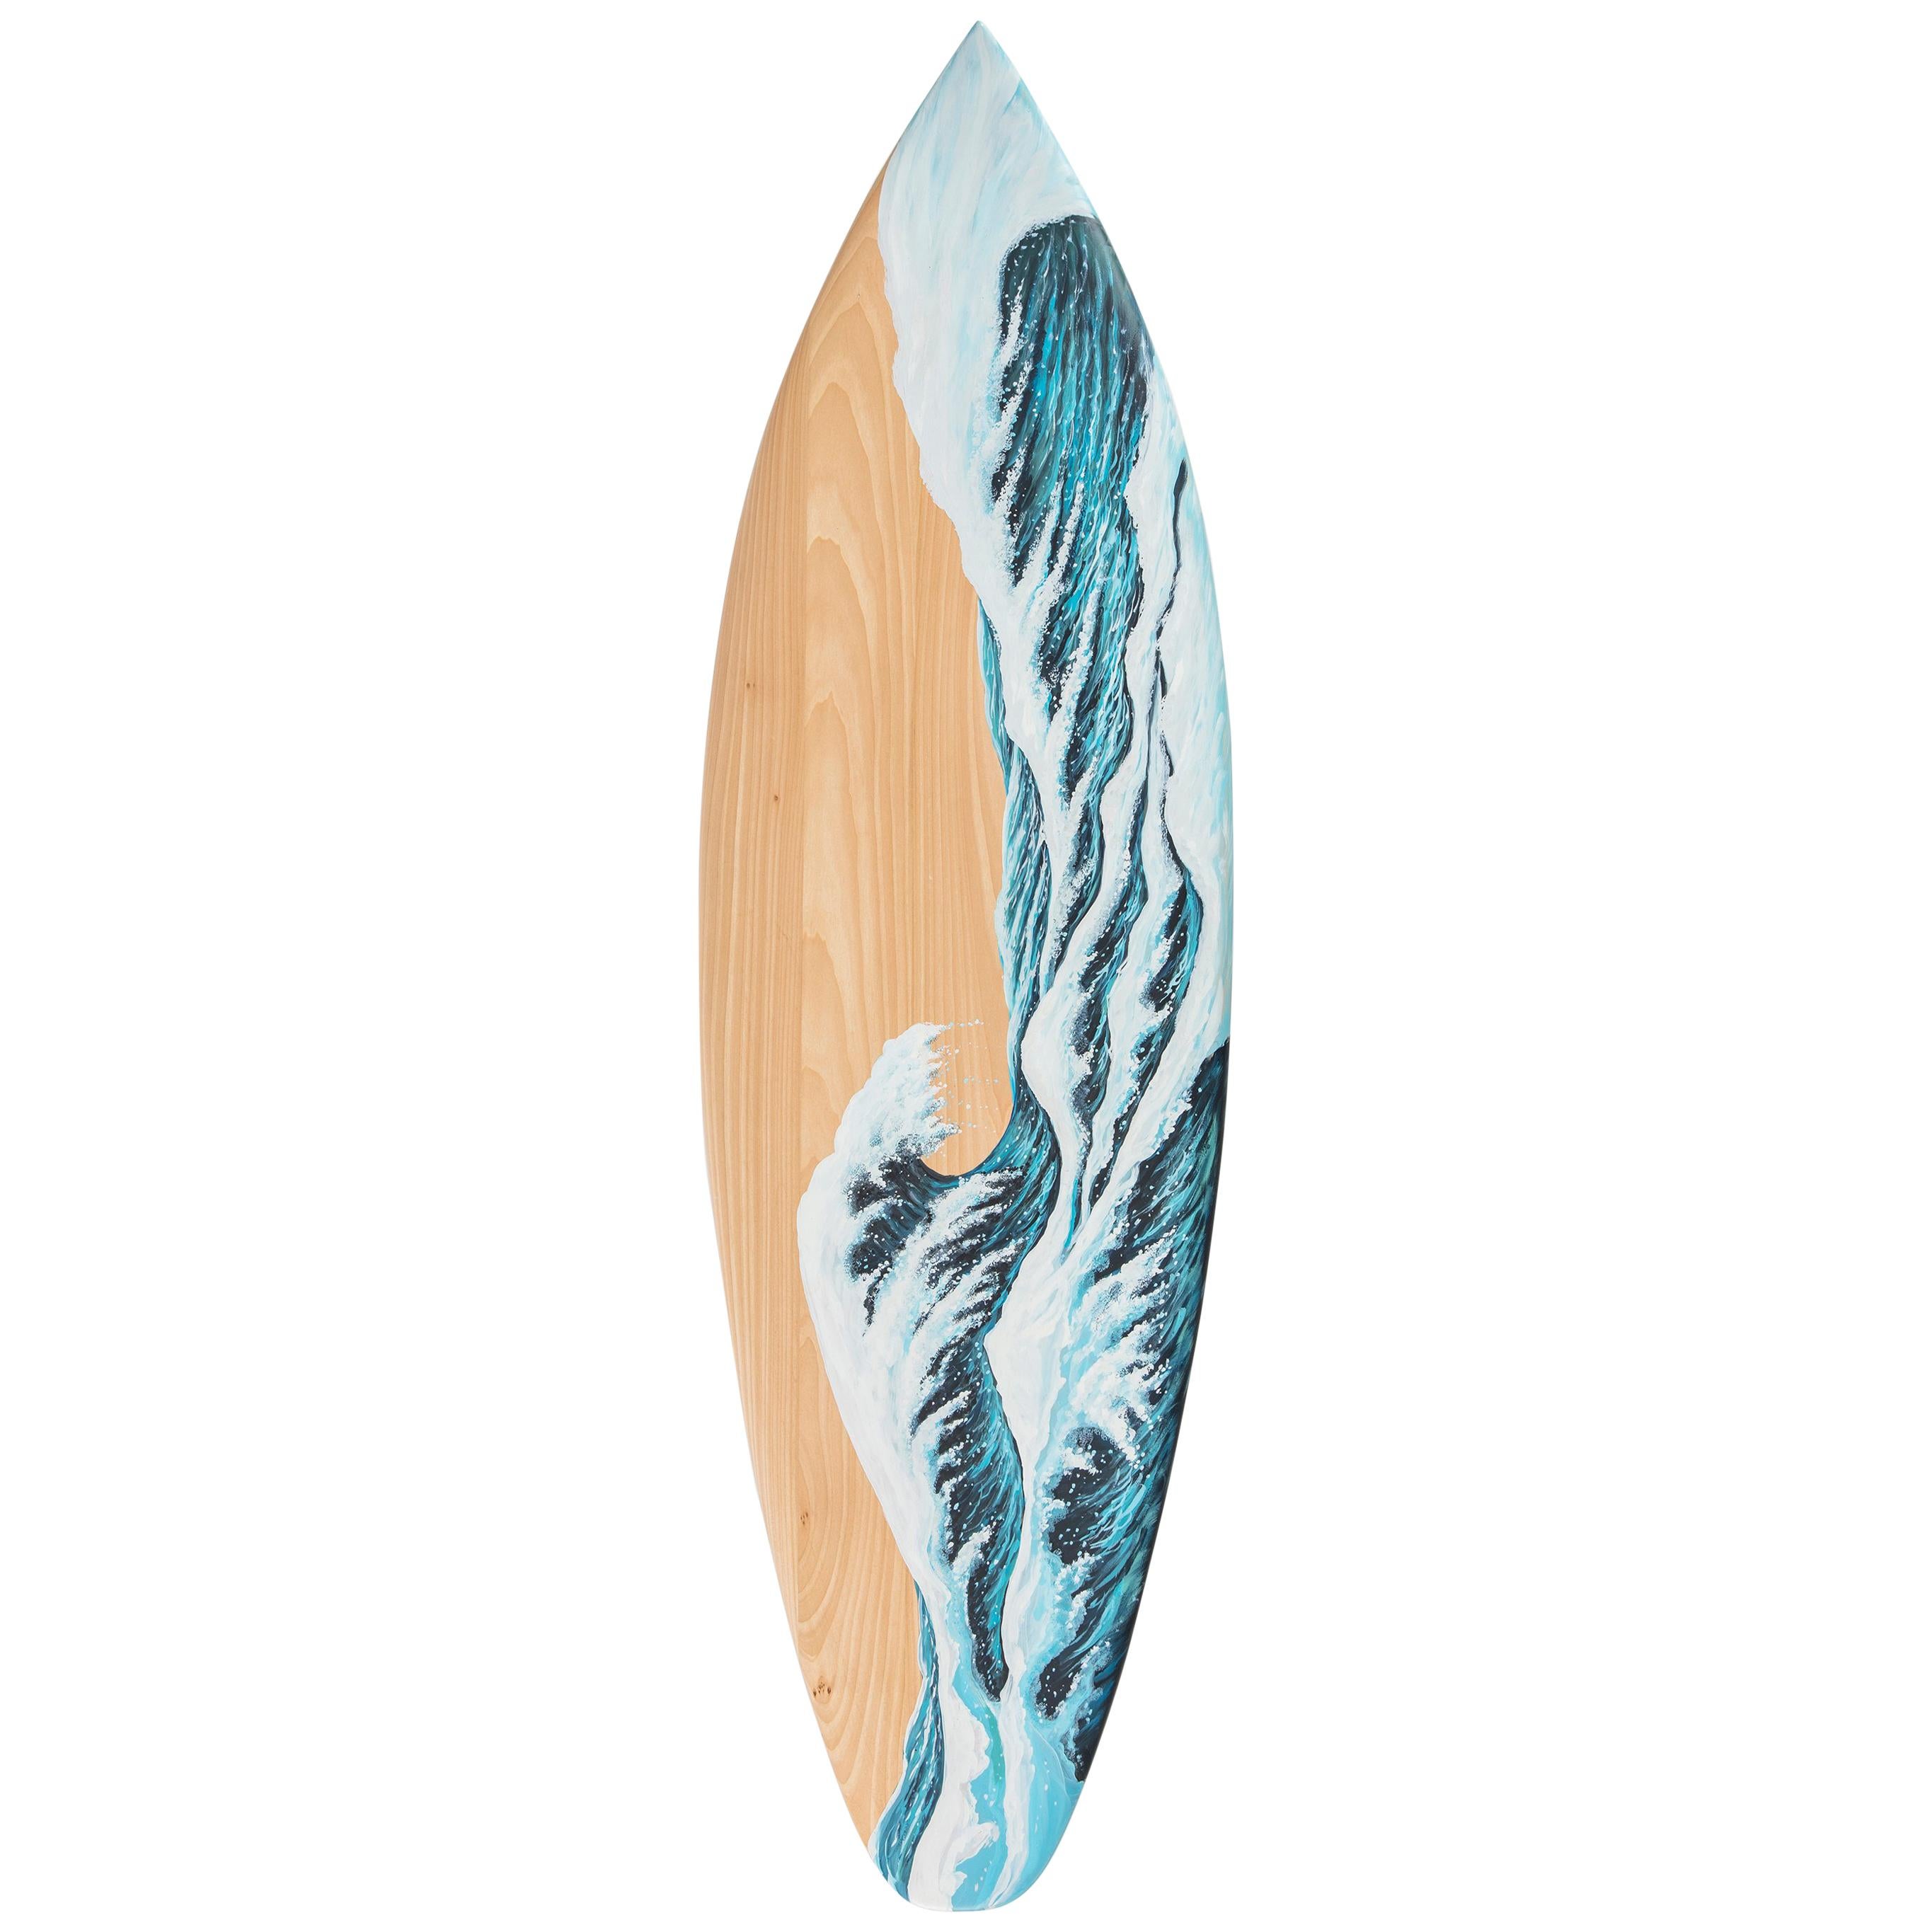 Banc de surf Motus en bois peint à la main avec pieds en marbre